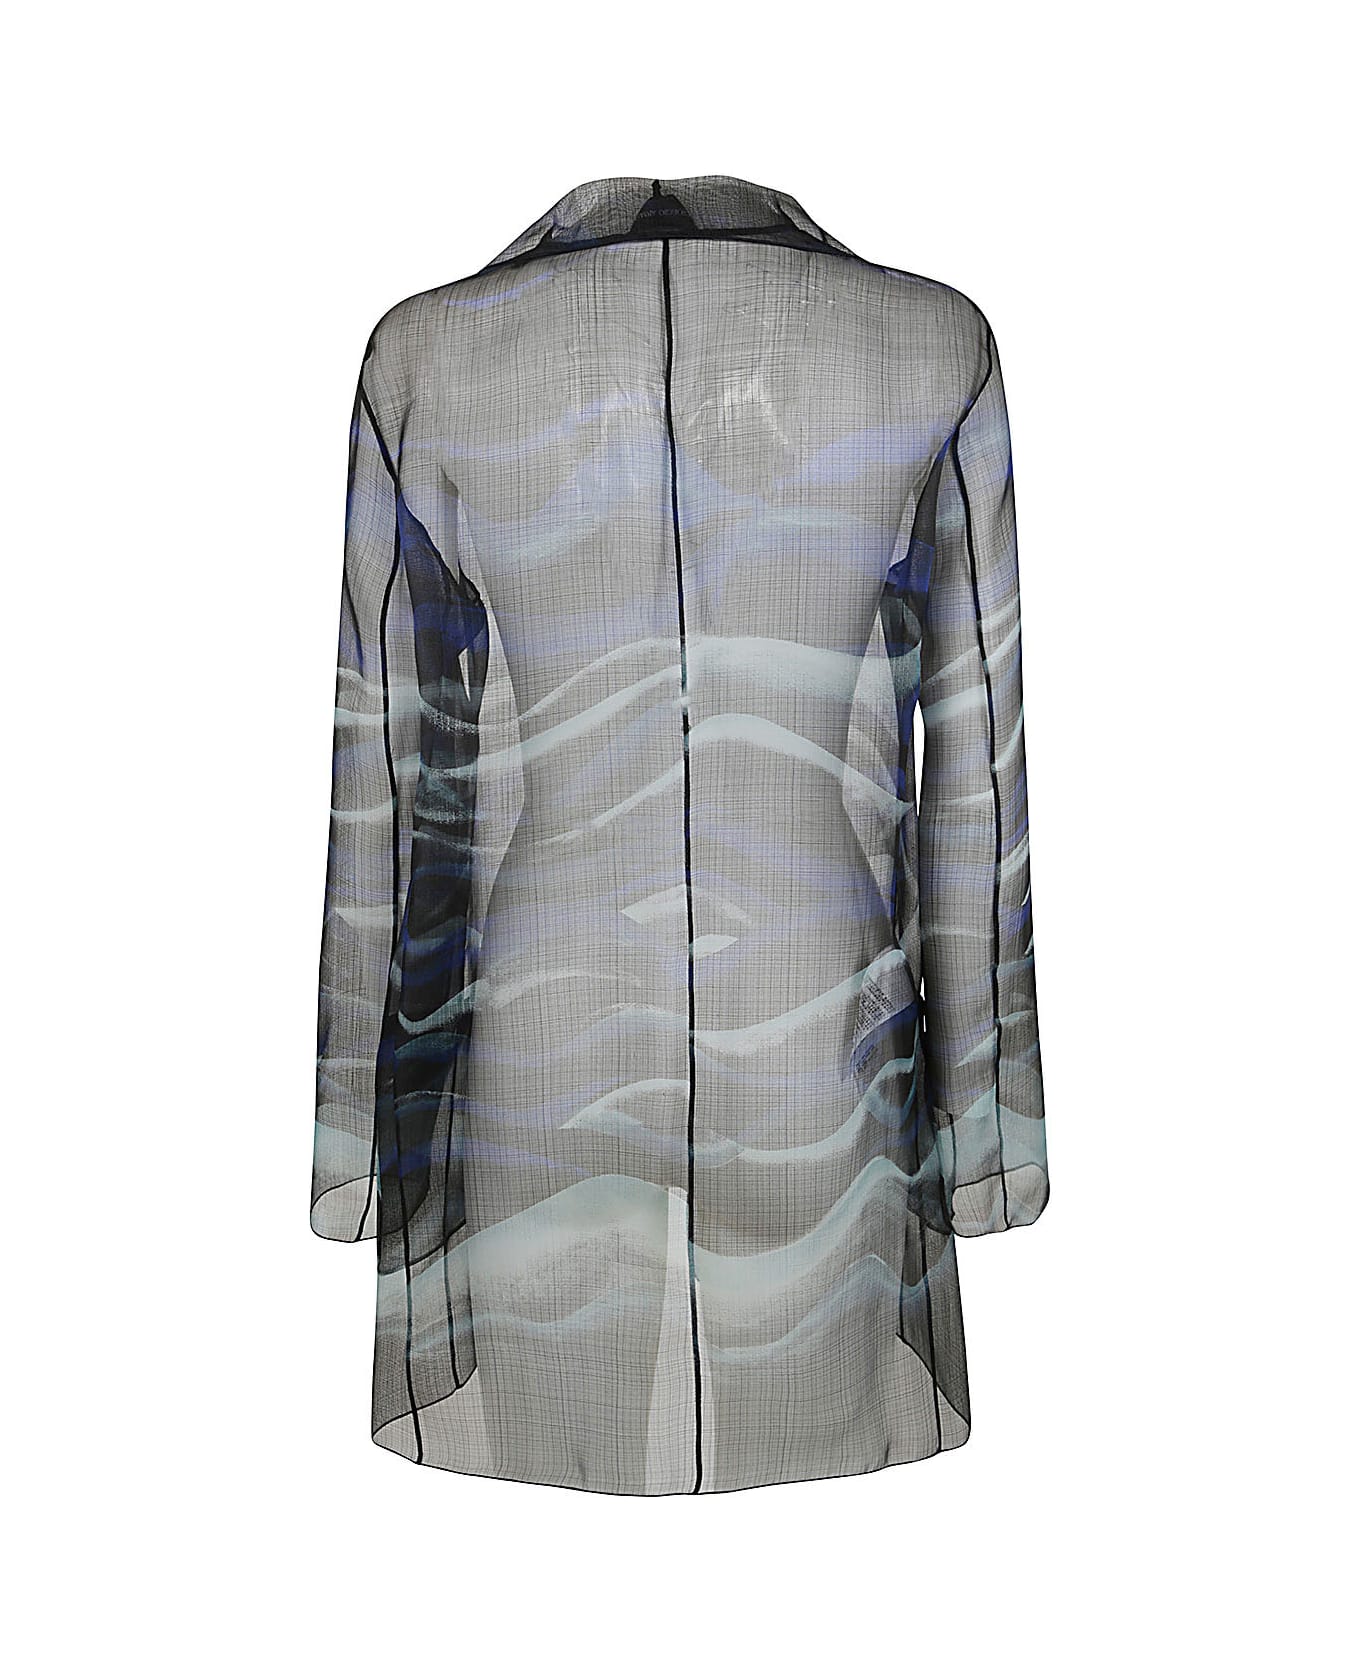 Giorgio Armani Printed Jacket - Multi